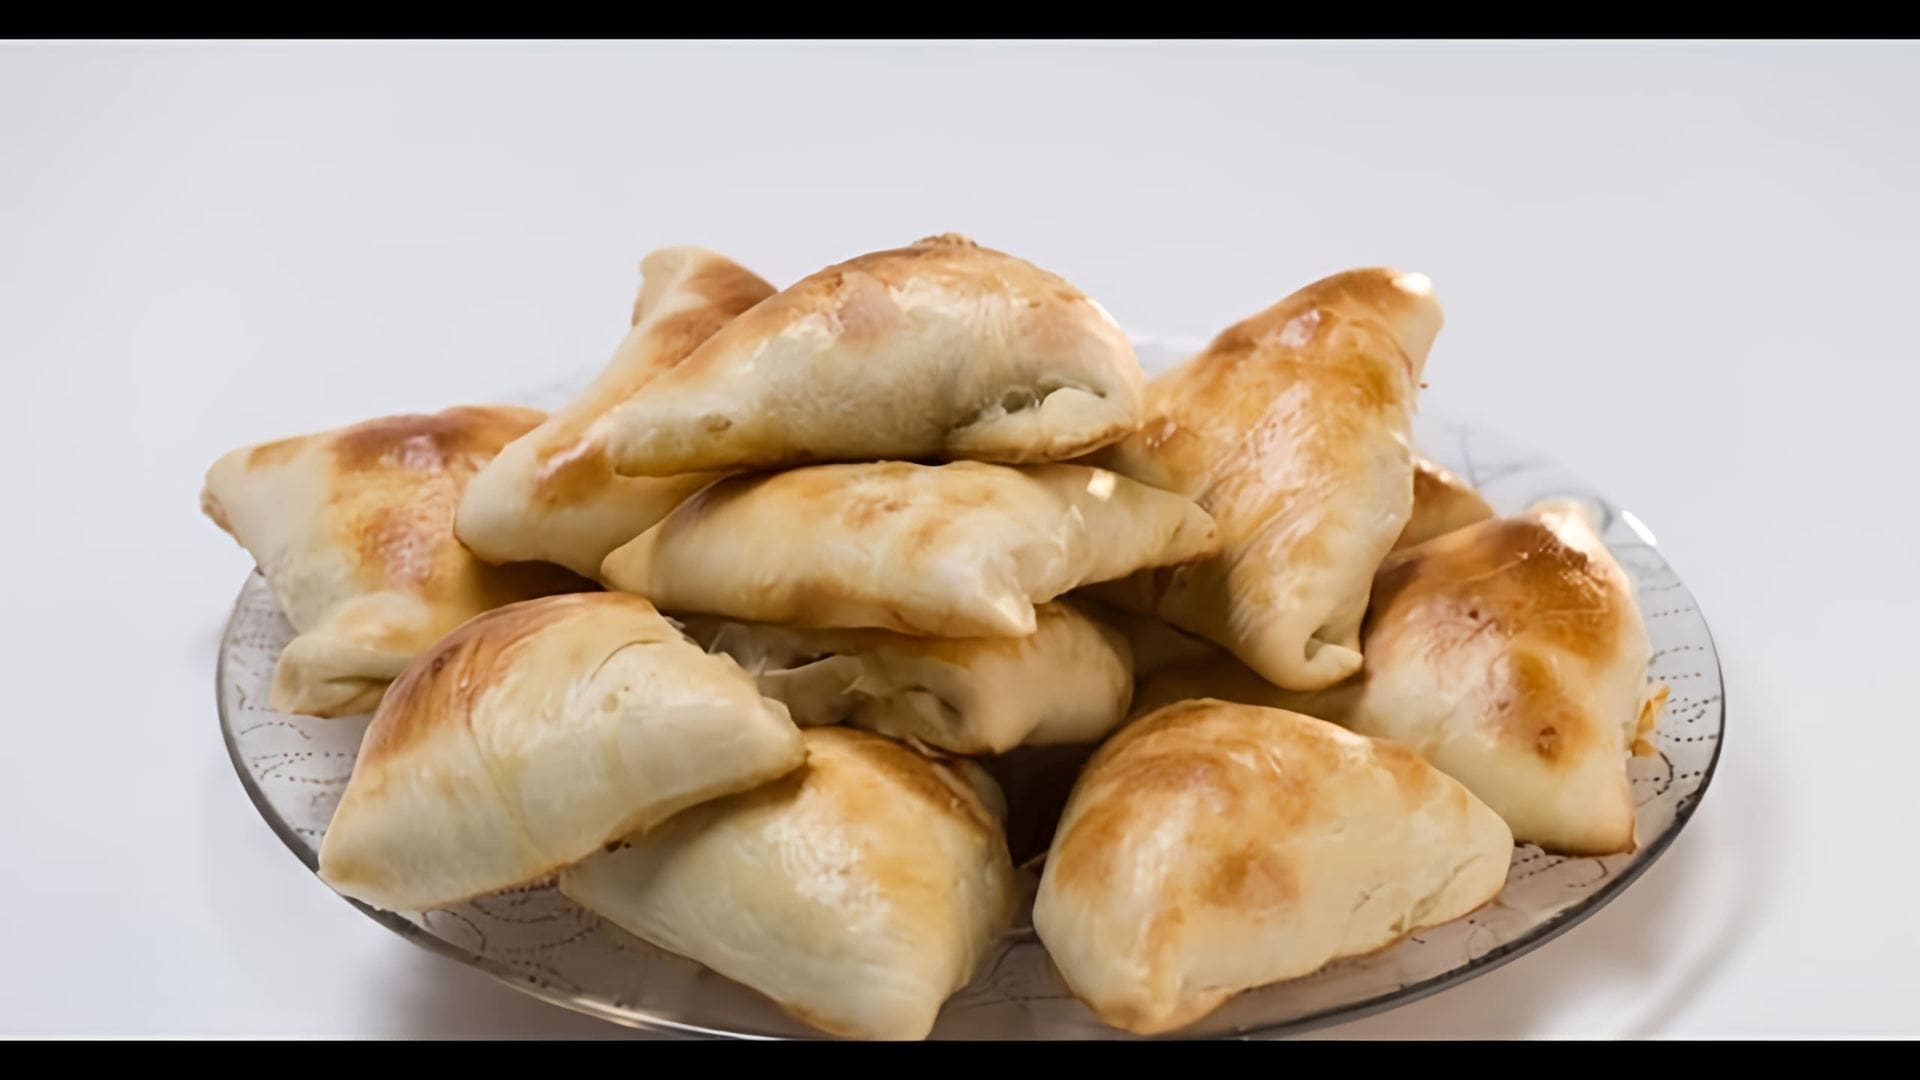 "Самса - узбекская кухня" - это видео-ролик, который демонстрирует процесс приготовления традиционного узбекского блюда - самсы